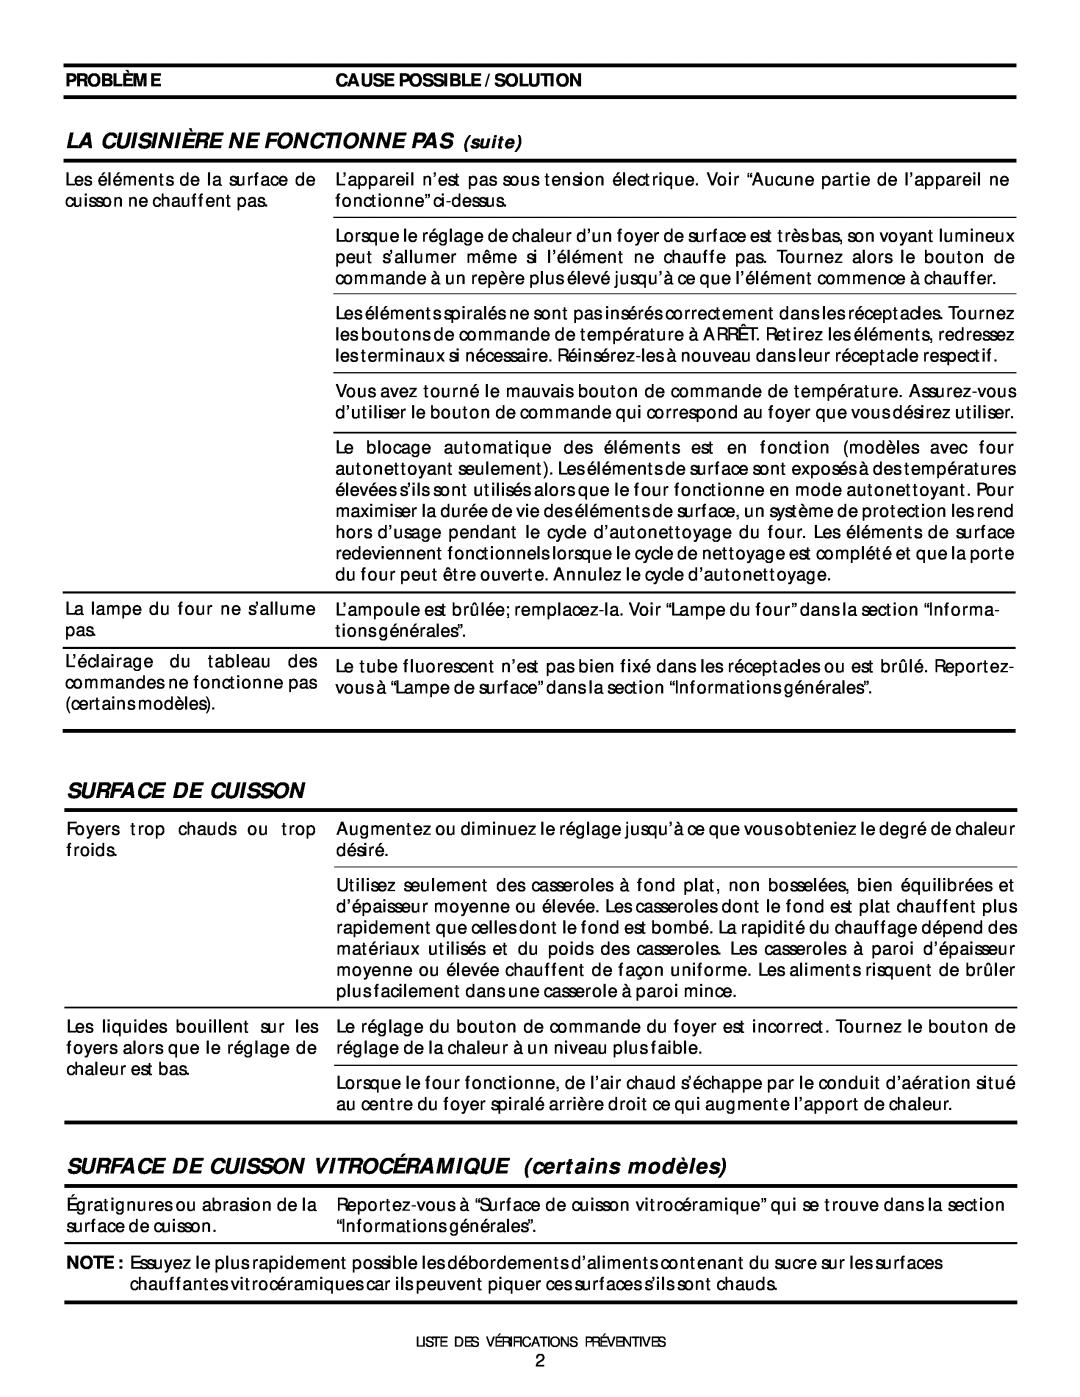 Frigidaire 318200404 manual LA CUISINIÈRE NE FONCTIONNE PAS suite, Surface De Cuisson, Problèmecause Possible / Solution 